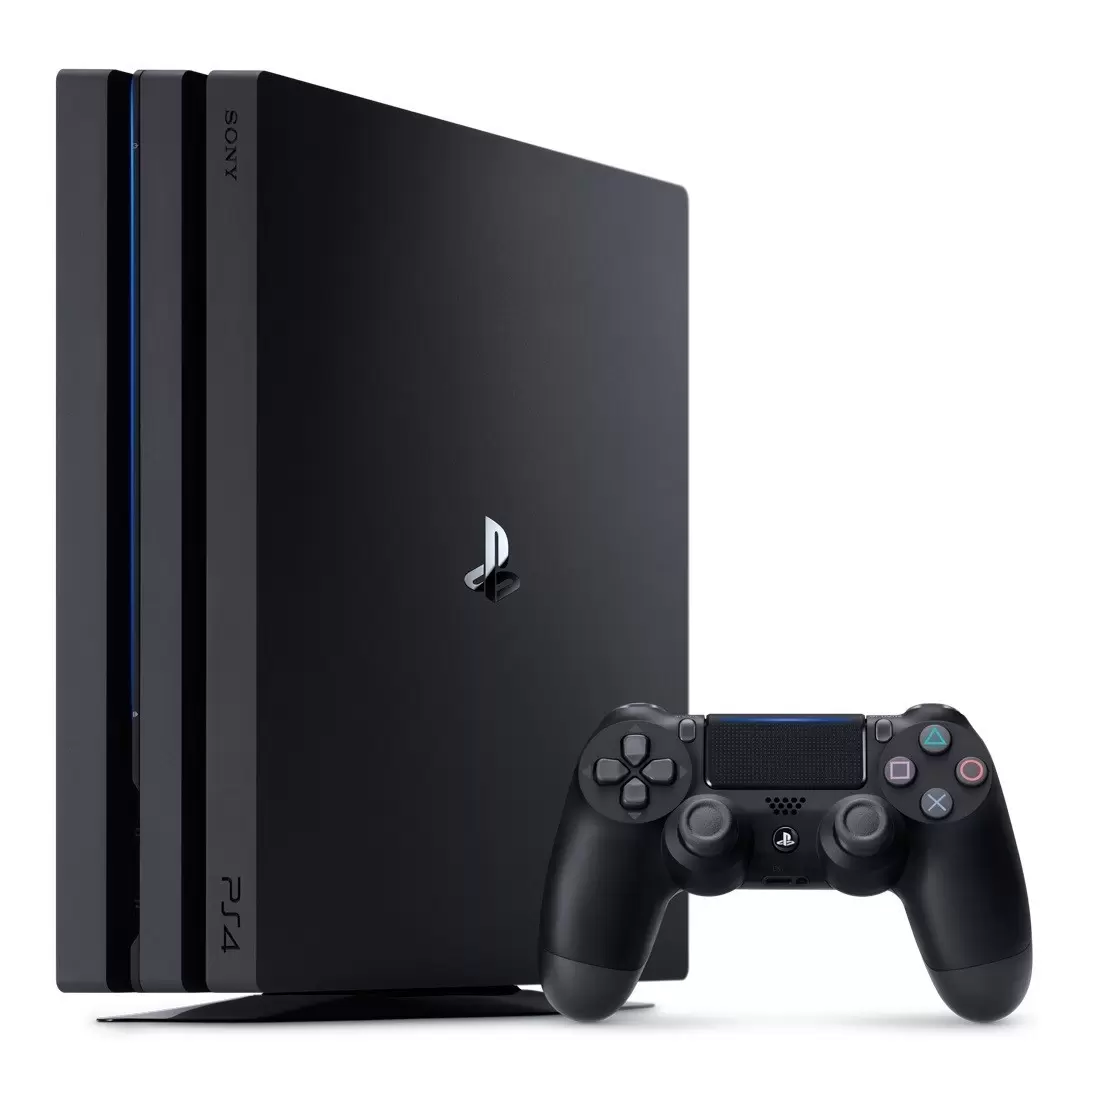 Matériel PS4 - PlayStation 4 Pro - Black